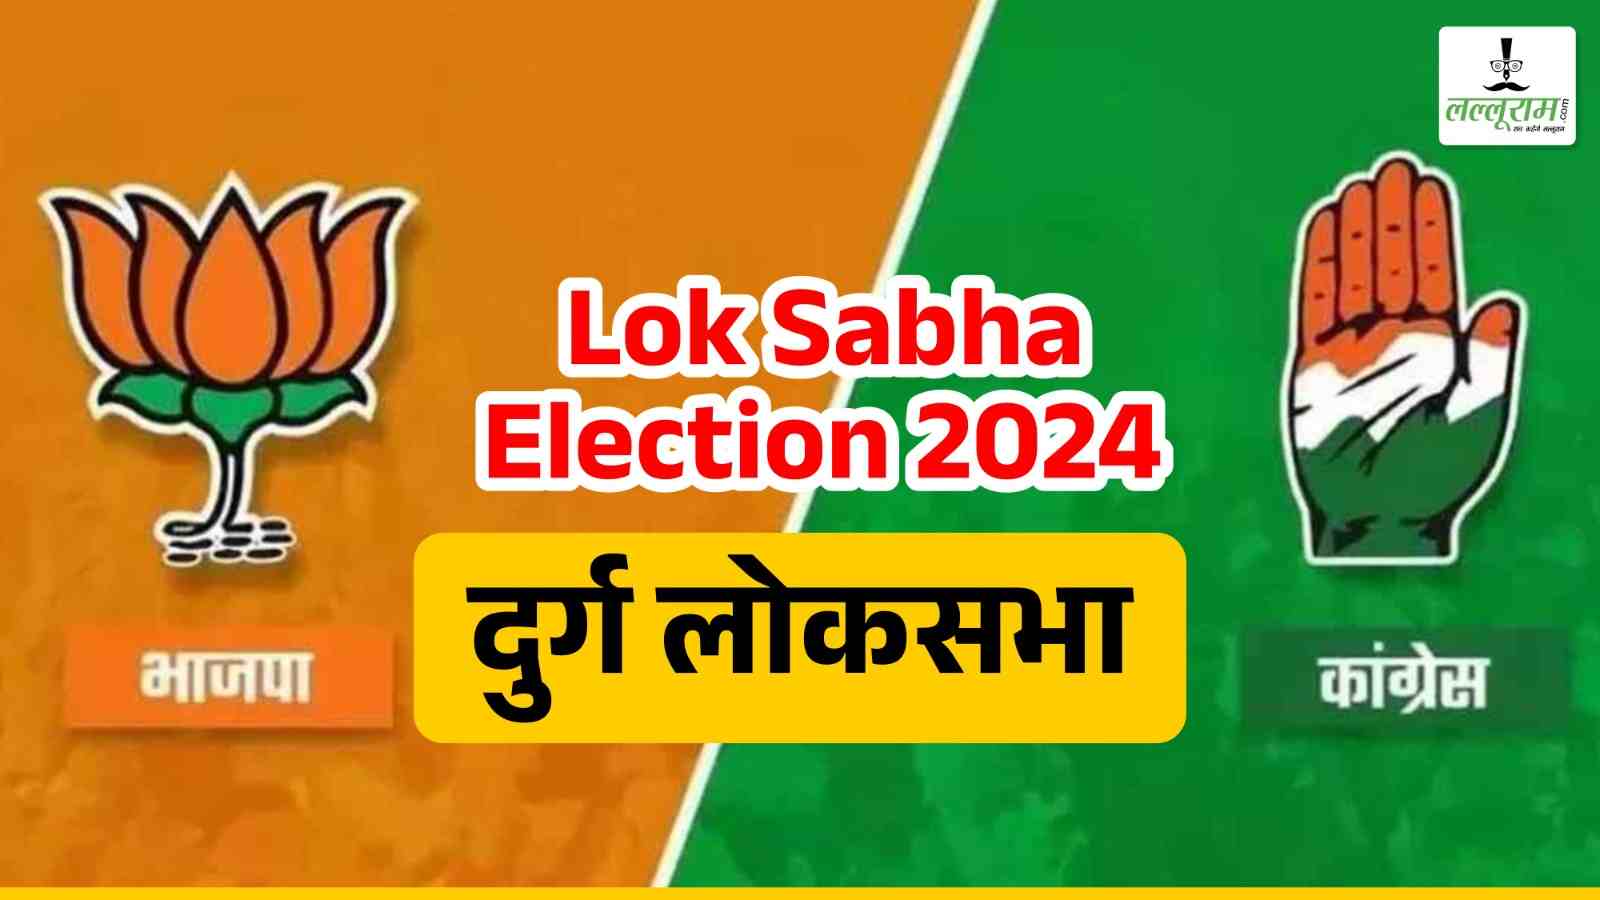 Lok Sabha Election 2024 : साहू-कुर्मी की सियासत में बनते बिगड़ते हैं समीकरण, जानिए दुर्ग लोकसभा का इतिहास…, इस बार भाजपा-कांग्रेस से इन नामों की चर्चा…